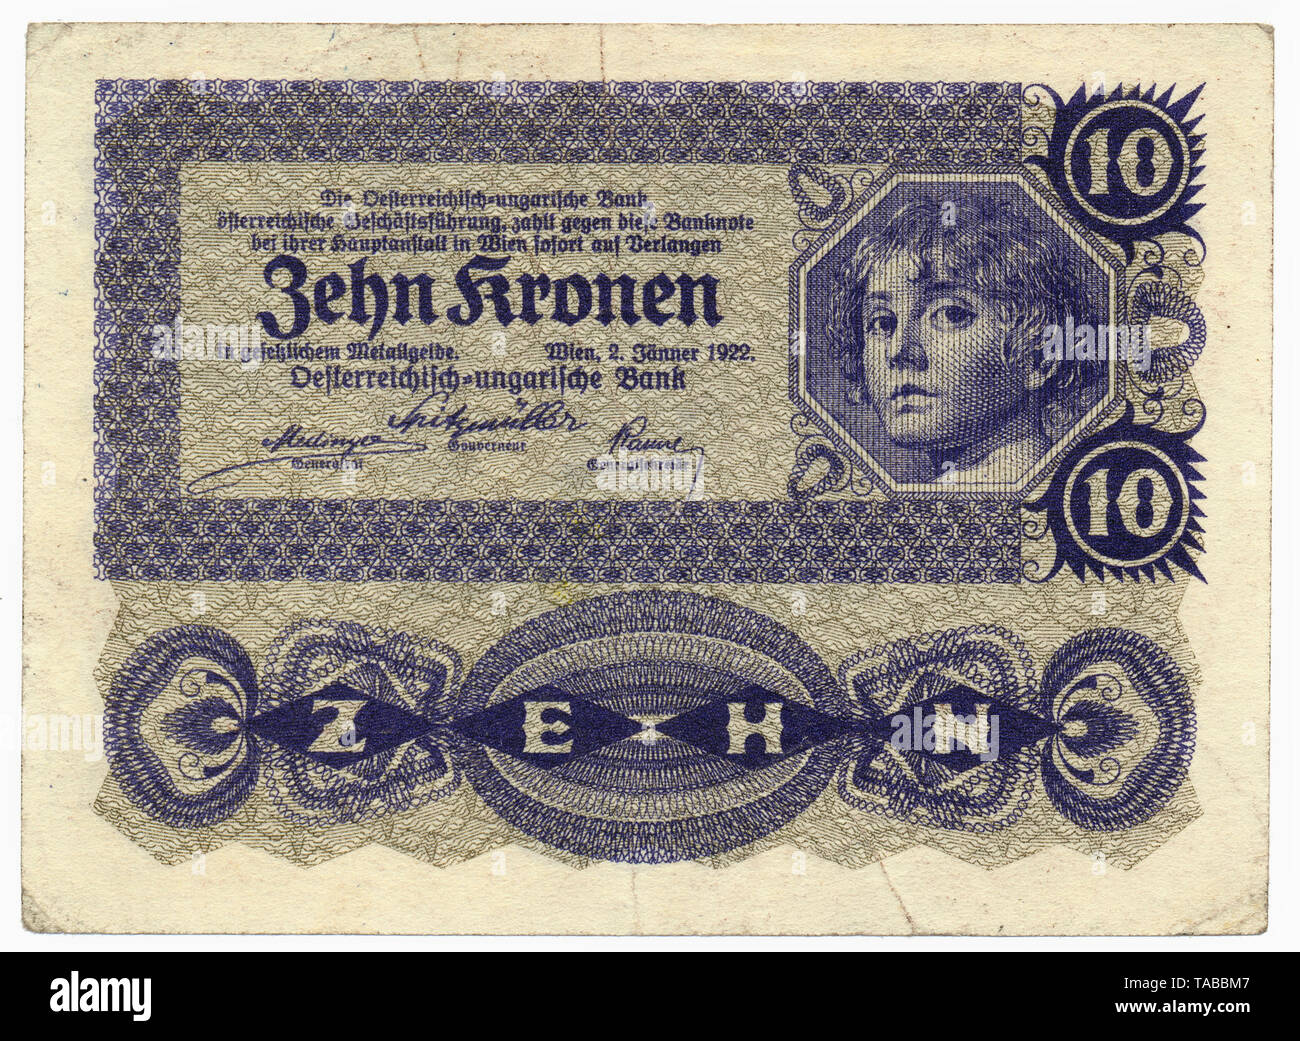 Historische Banknote, Österreich, Österreichisch-Ungarische Bank, 10 Kronen, 1922, Historic banknote, Austria, Austro-Hungarian Bank, 10 koronas Stock Photo